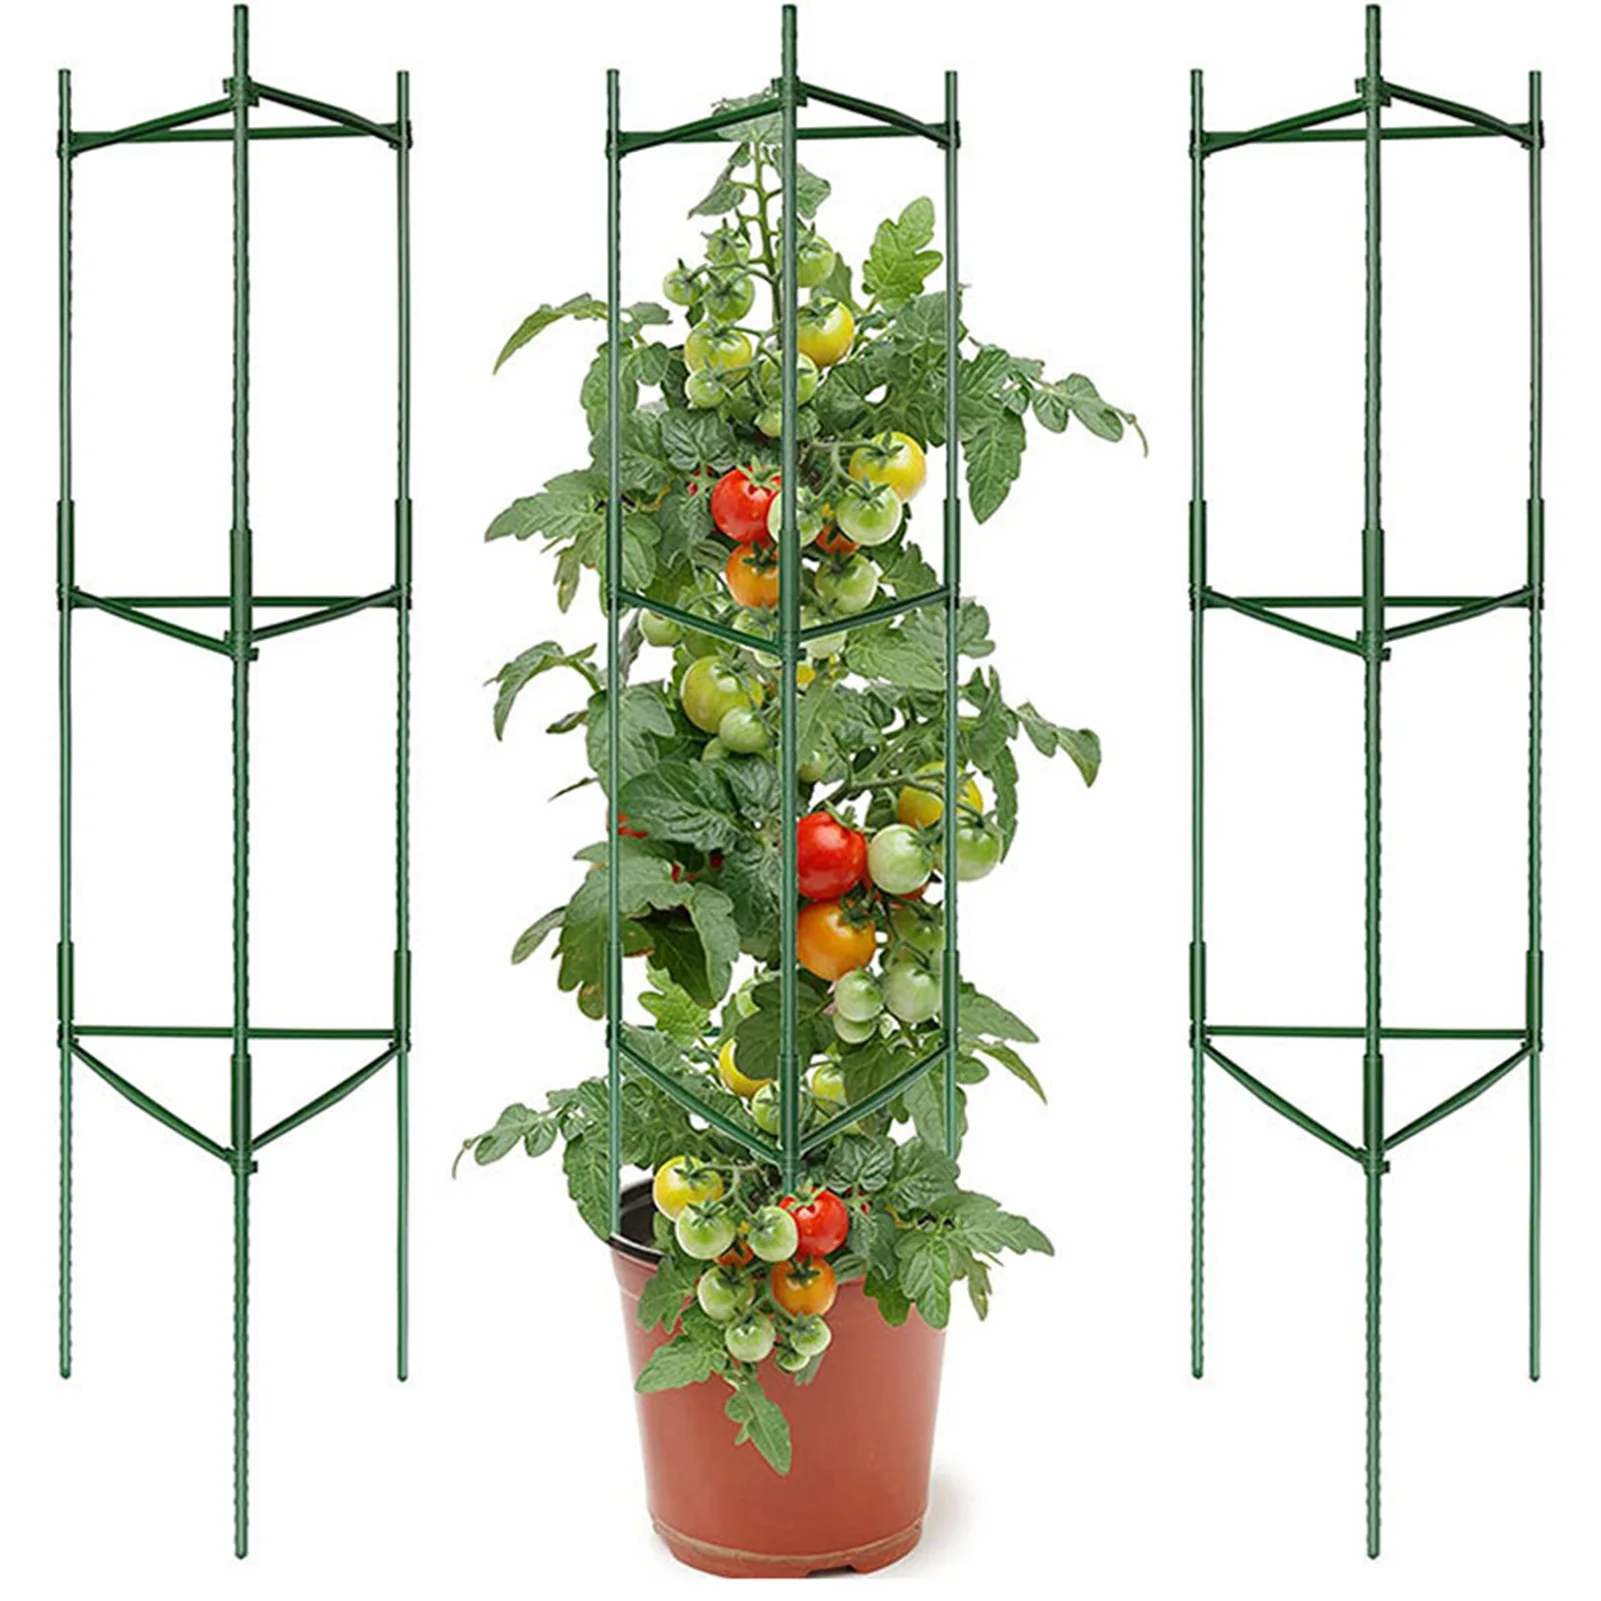 3 шт. Томатные клетки для поддержки садовых растений высотой от 16 до 68 дюймов Садовые колья Томатная клетка для вьющихся растений Овощная решетка Изображение 0